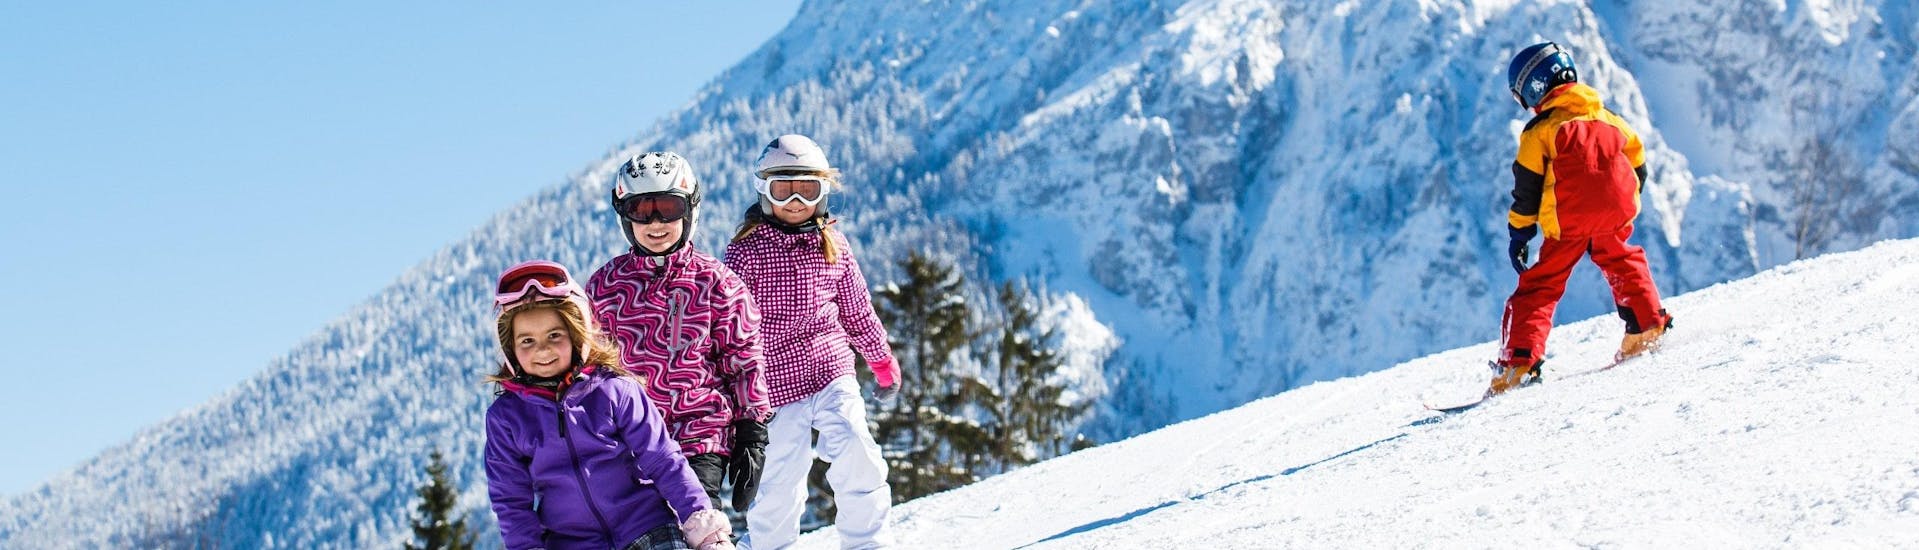 Ausblick auf die sonnige Berglandschaft beim Skifahren lernen mit den Skischulen in Ruhpolding.